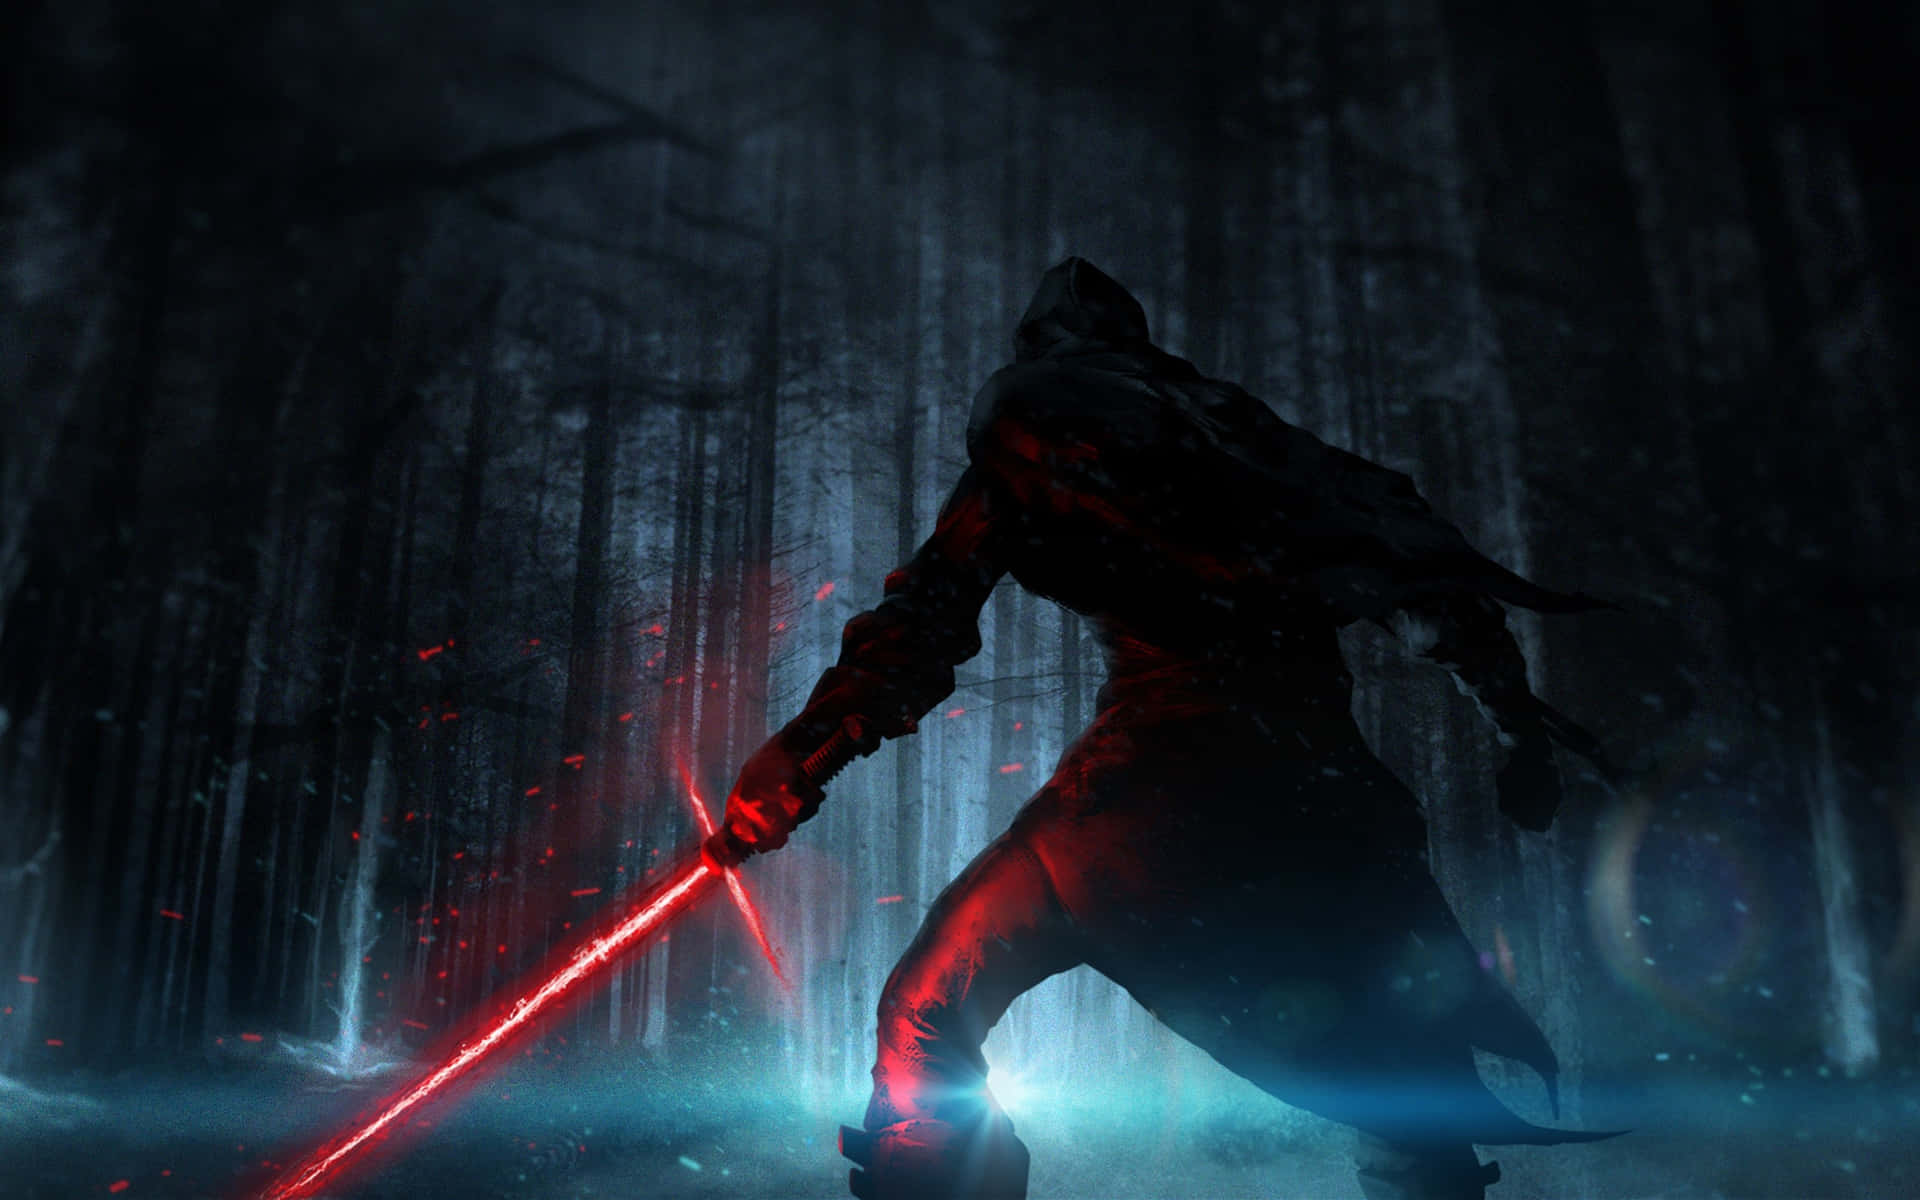 Reyasume Su Misión De Encontrar A Luke Skywalker En Star Wars: El Despertar De La Fuerza. Fondo de pantalla